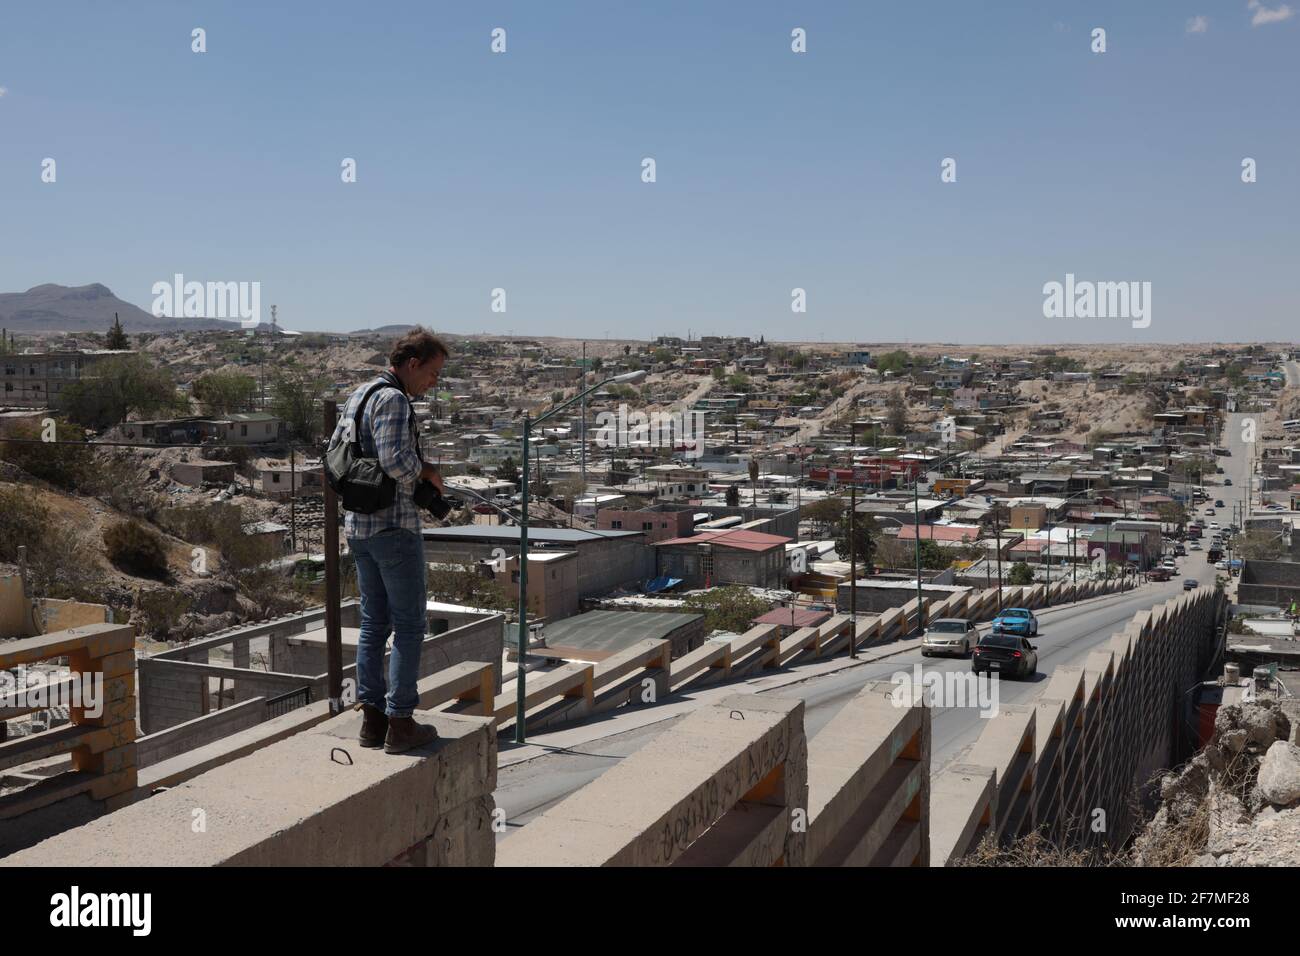 Fotografía panorámica de la ciudad fronteriza Juárez, estado de Chihuahua,  México país con una población de 1501551 es frontera con El Paso, Texas,  Estados Unidos, tiene tres puentes internacionales, Paso del Norte